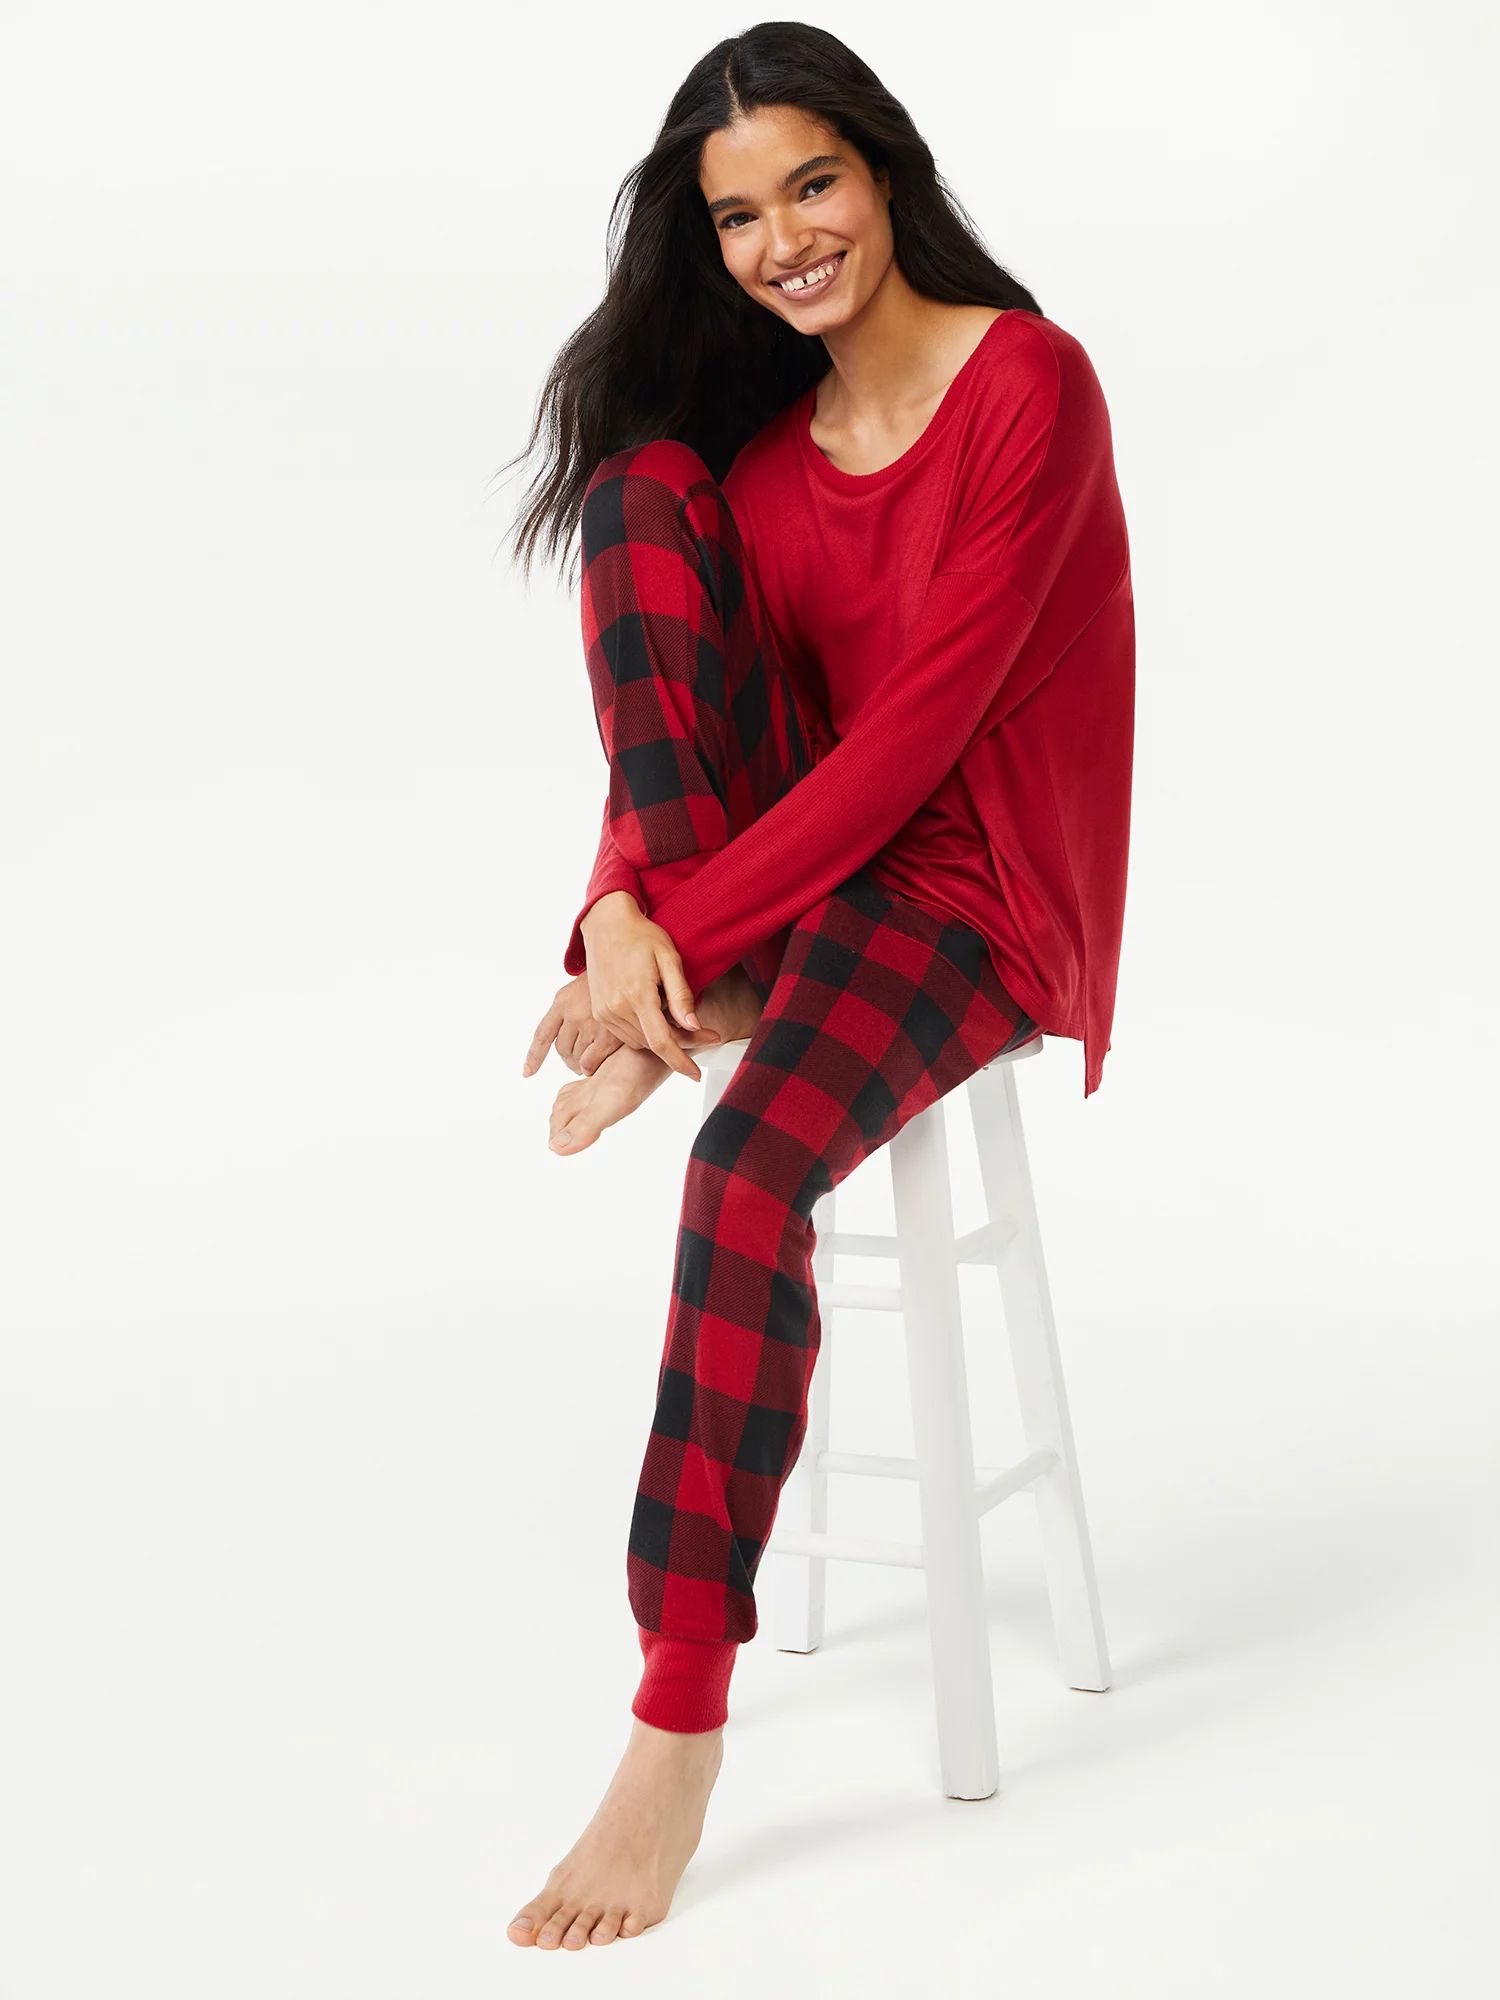 Joyspun Women's Long Sleeve Top and Jogger Pajama Set, 2-Piece, Sizes up to 3X | Walmart (US)